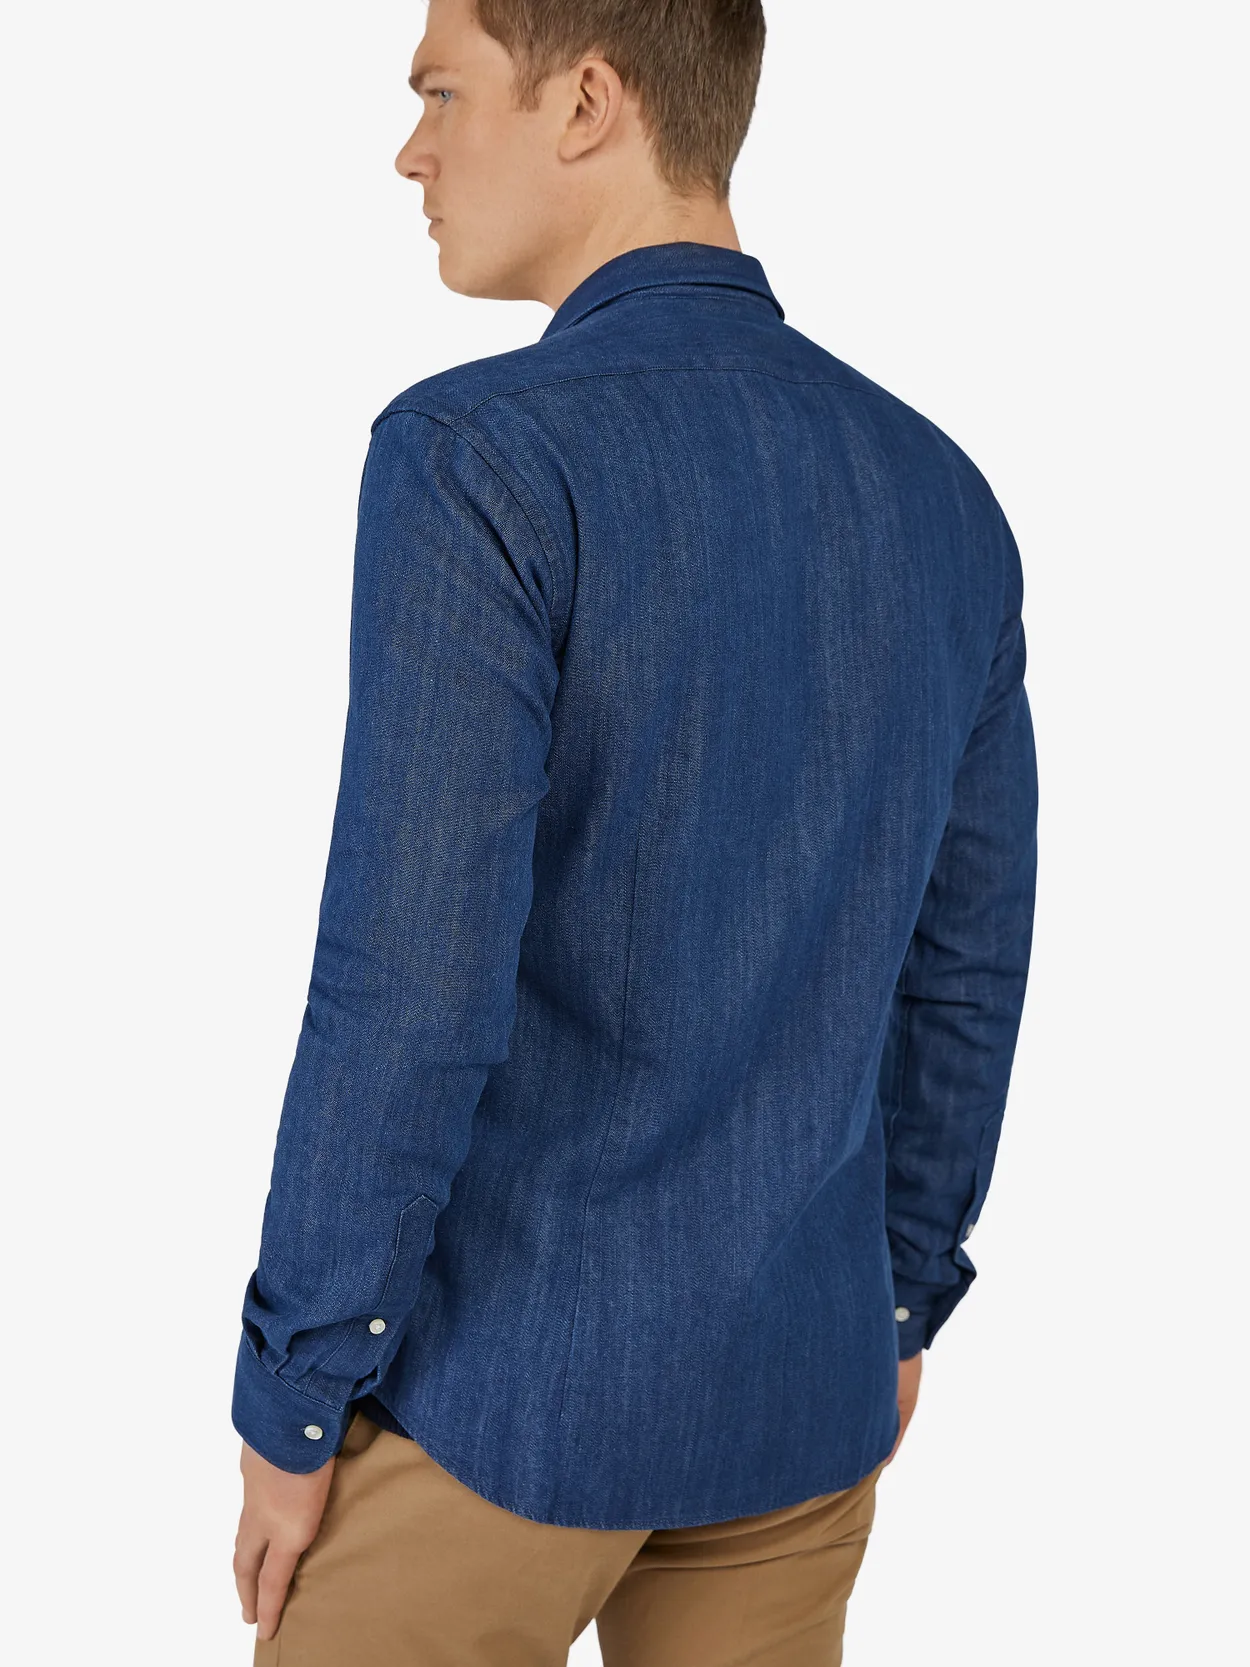 Blue Denim Zipper Shirt